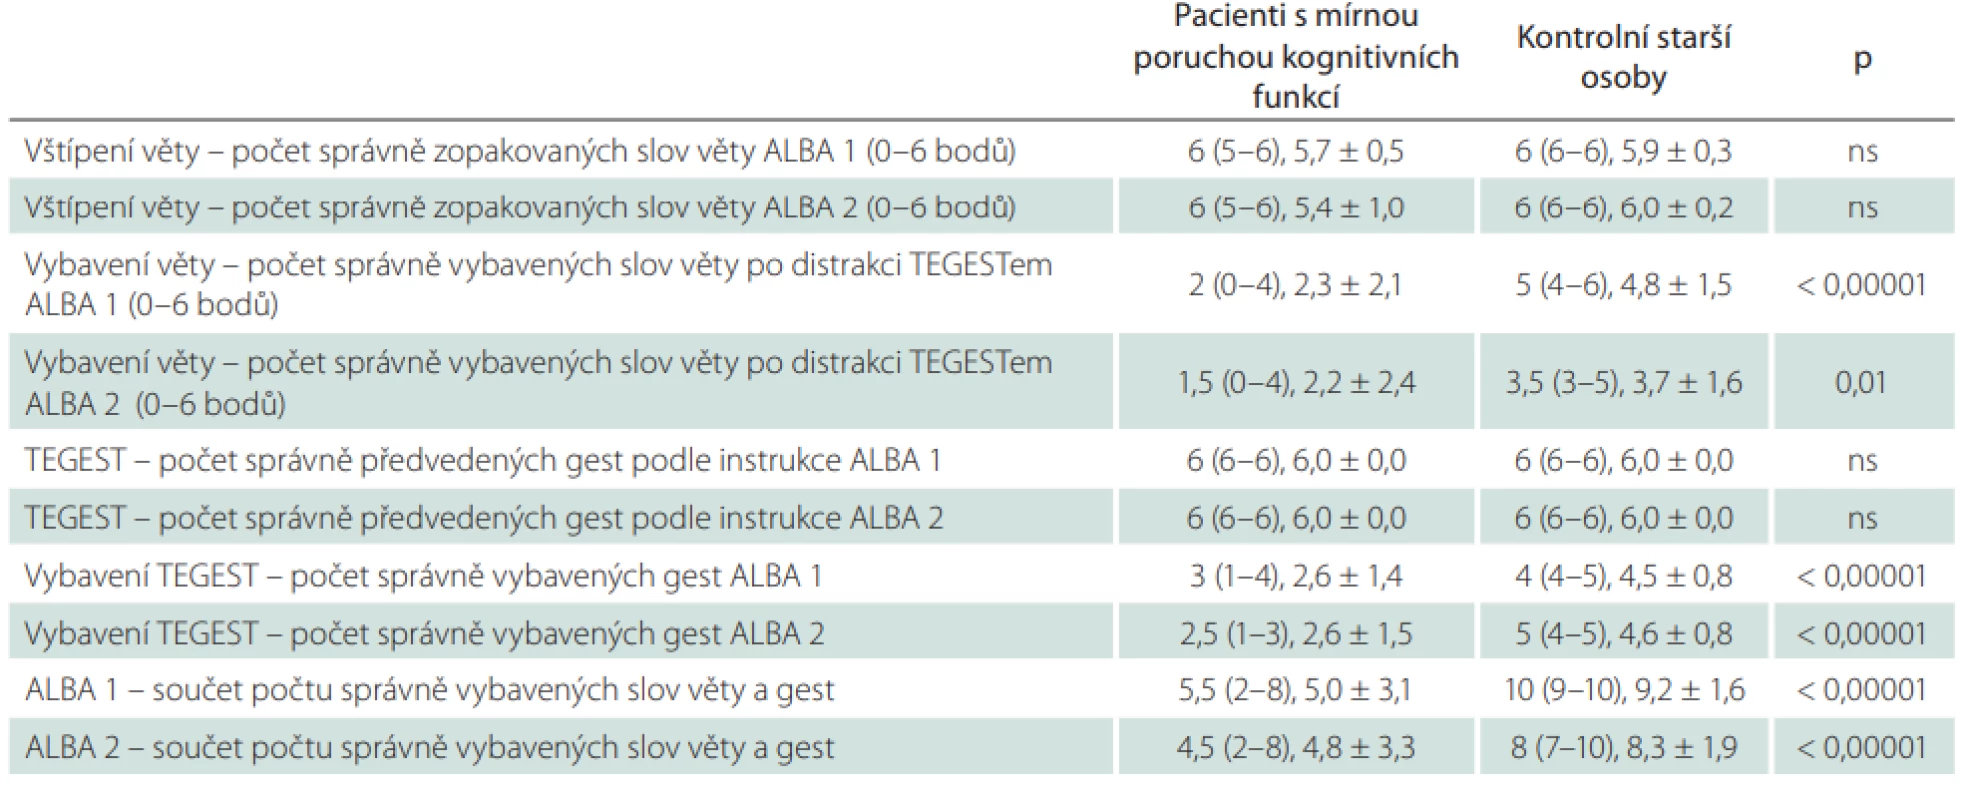  Skóry obou verzí testu ALBA a jeho dvou částí u pacientů s kognitivní poruchou a kontrolních starších osob vč. porovnání
mezi oběma skupinami.